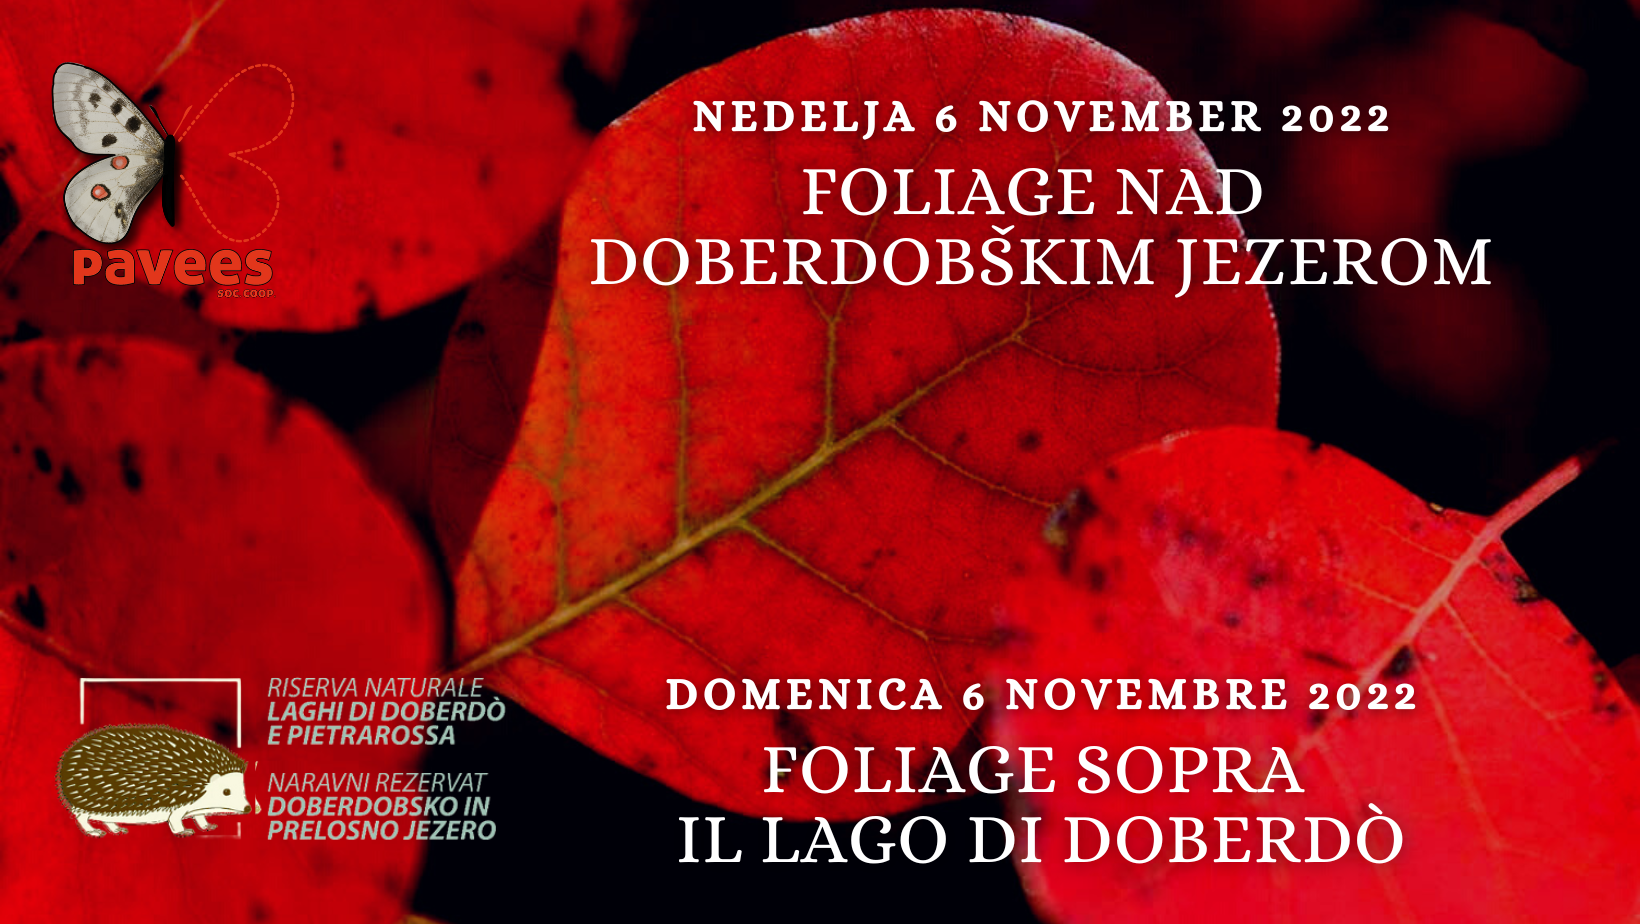 Domenica 6 novembre - Foliage sopra il Lago di Doberdò